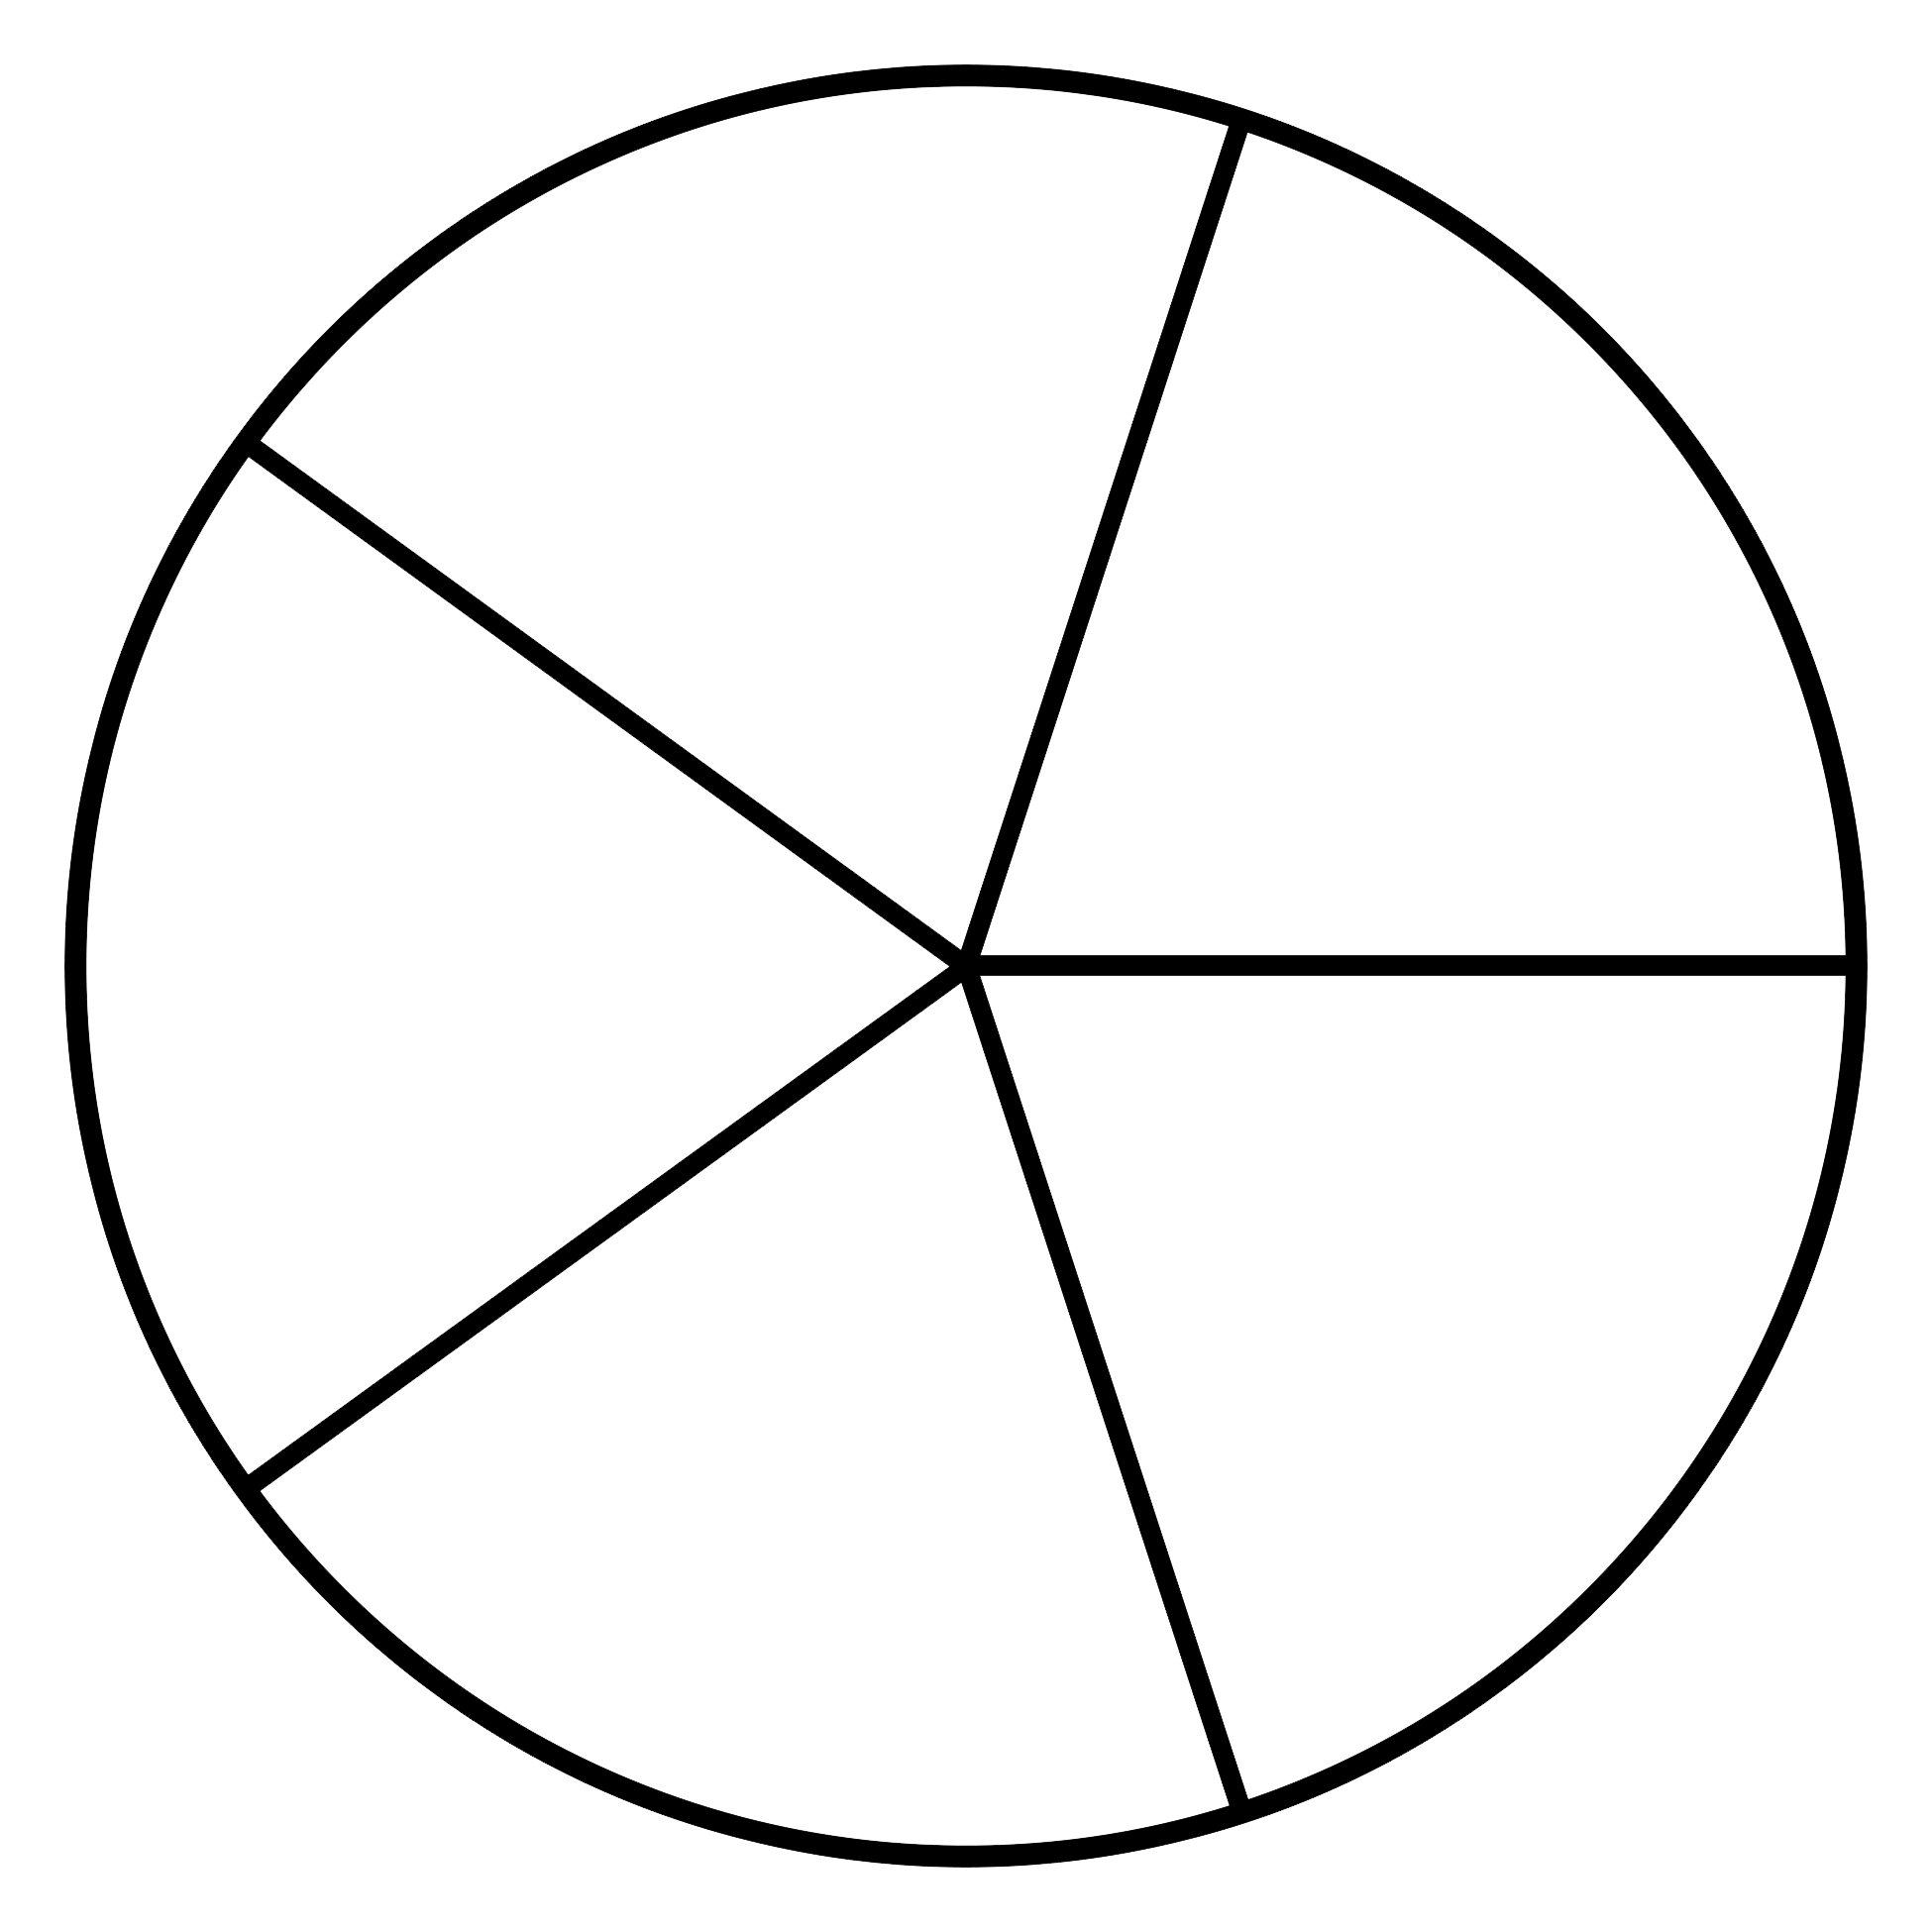 Круг 6 а 12. Круг разделенный на части. Круг поделенный на сектора. Круг разделенный на 6 частей. Сектор круга.